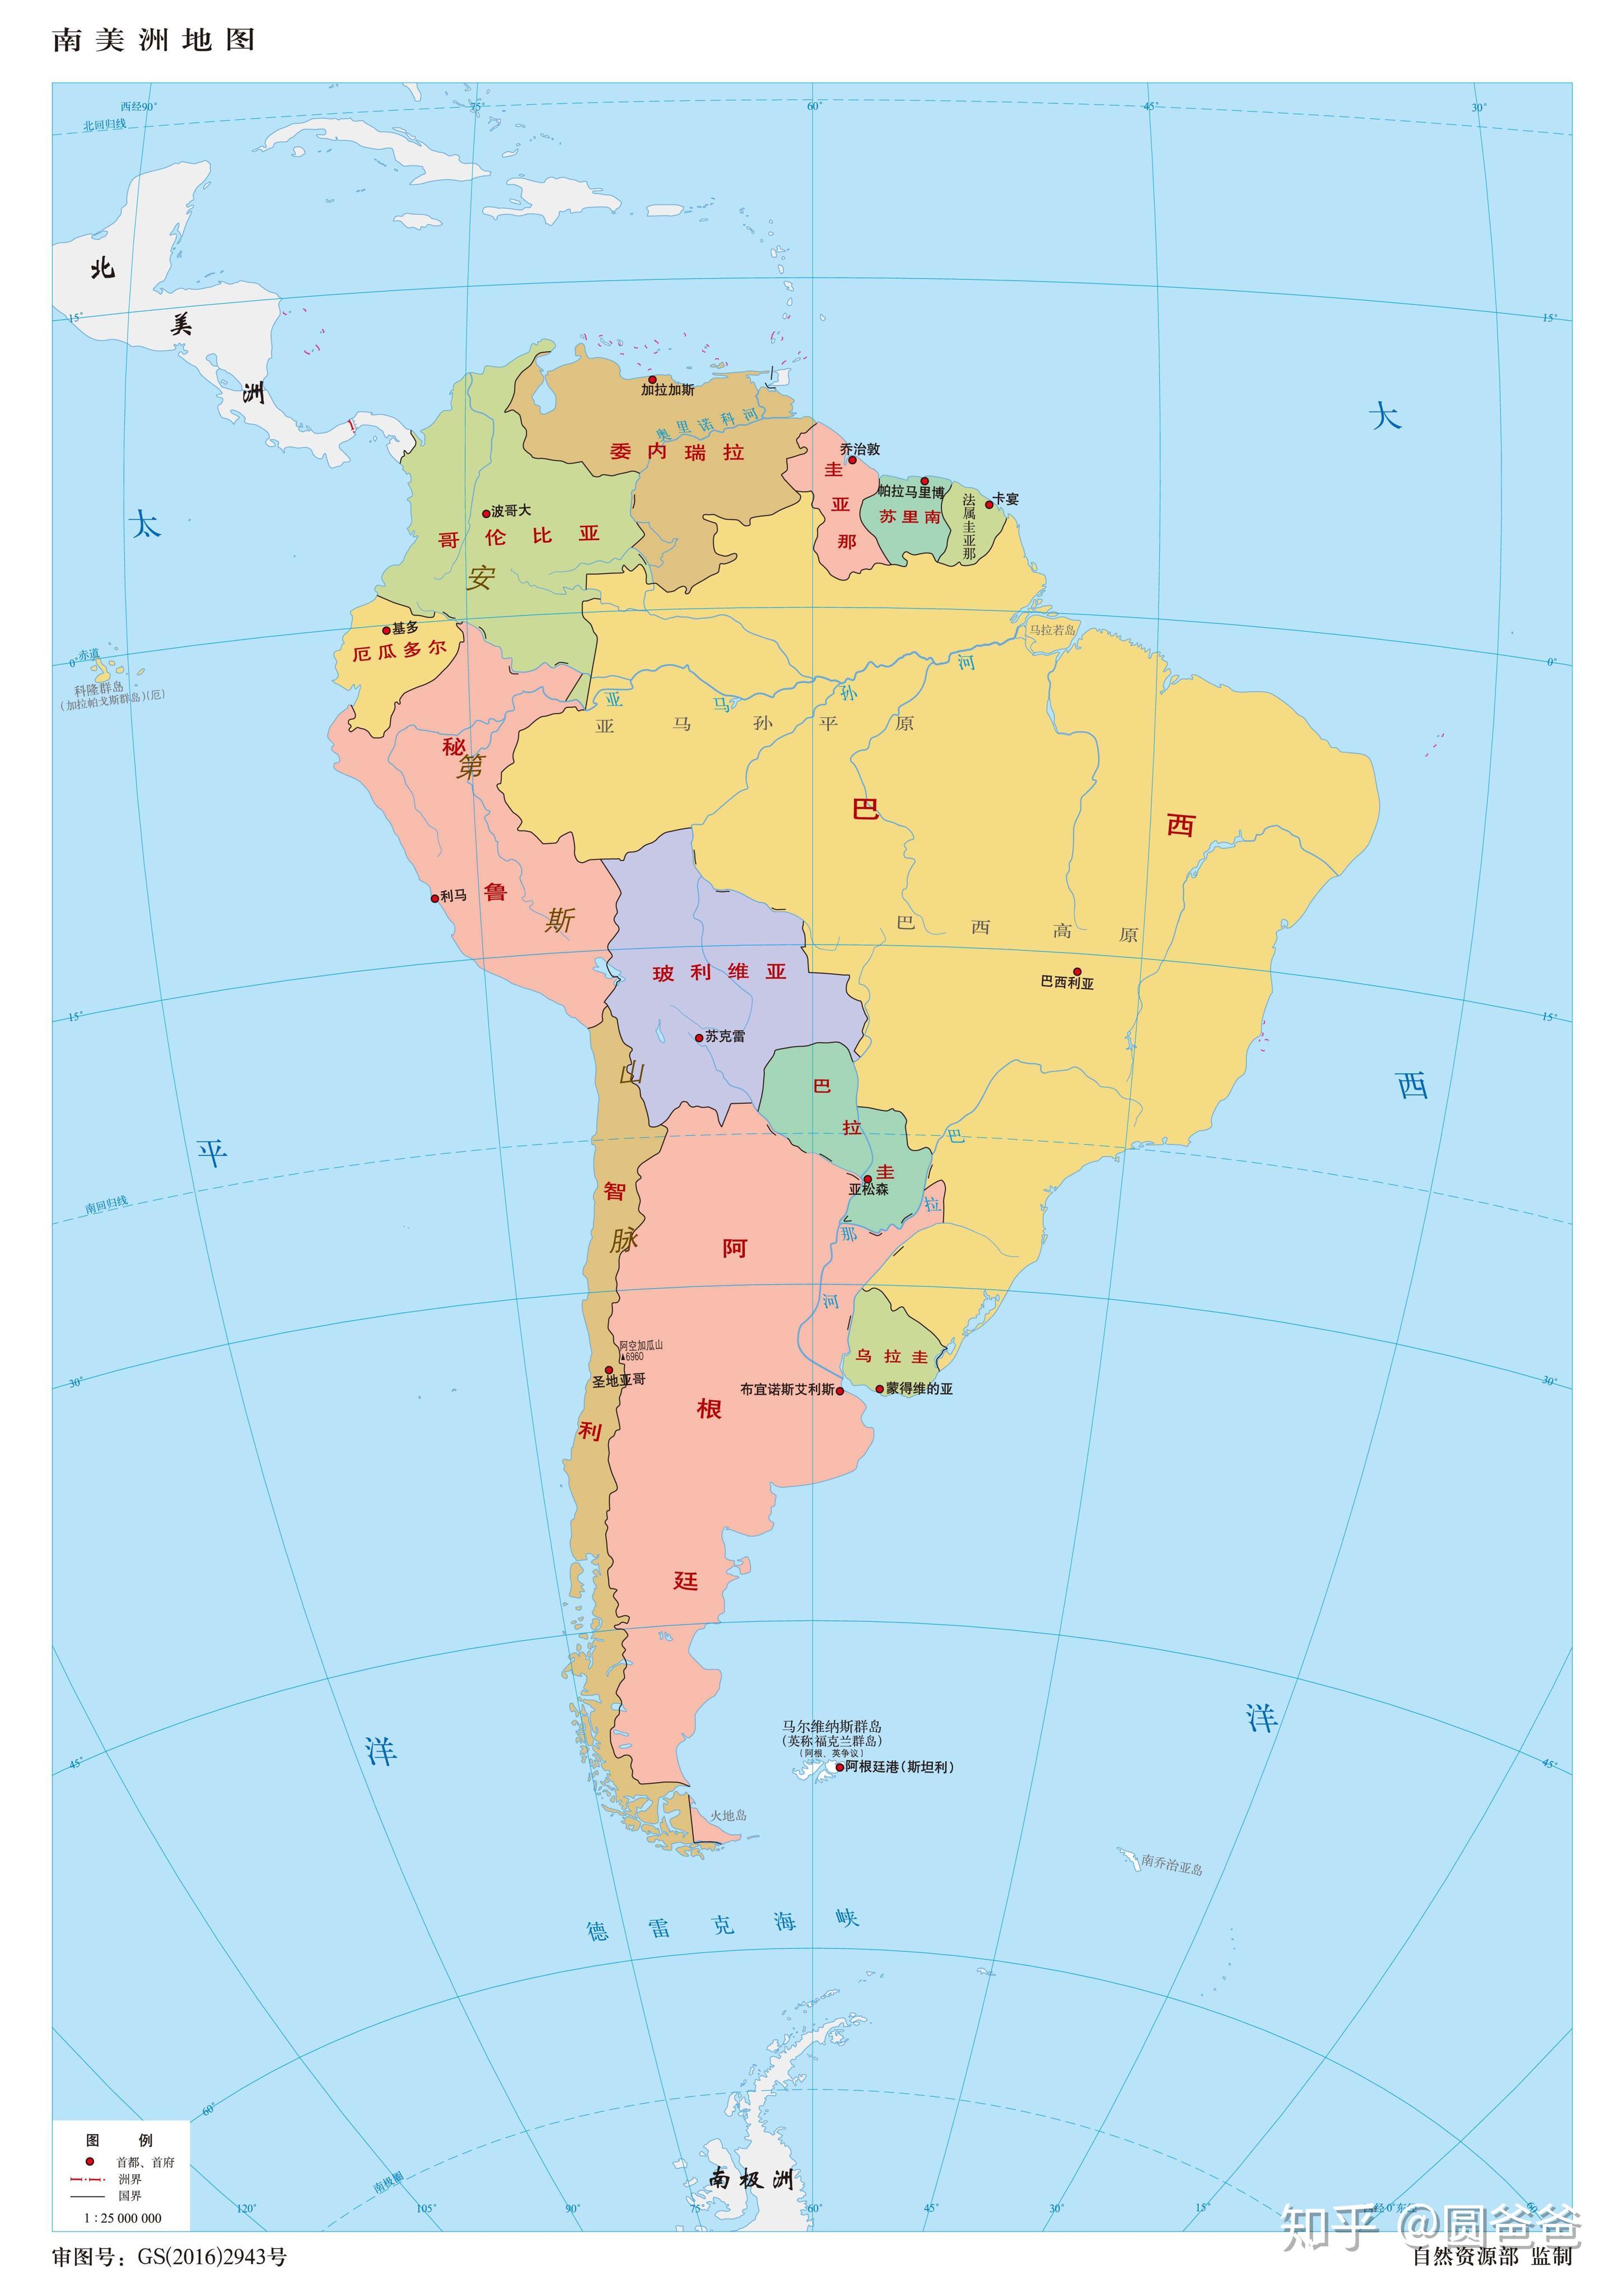 北美洲地势图 - 世界地理地图 - 地理教师网